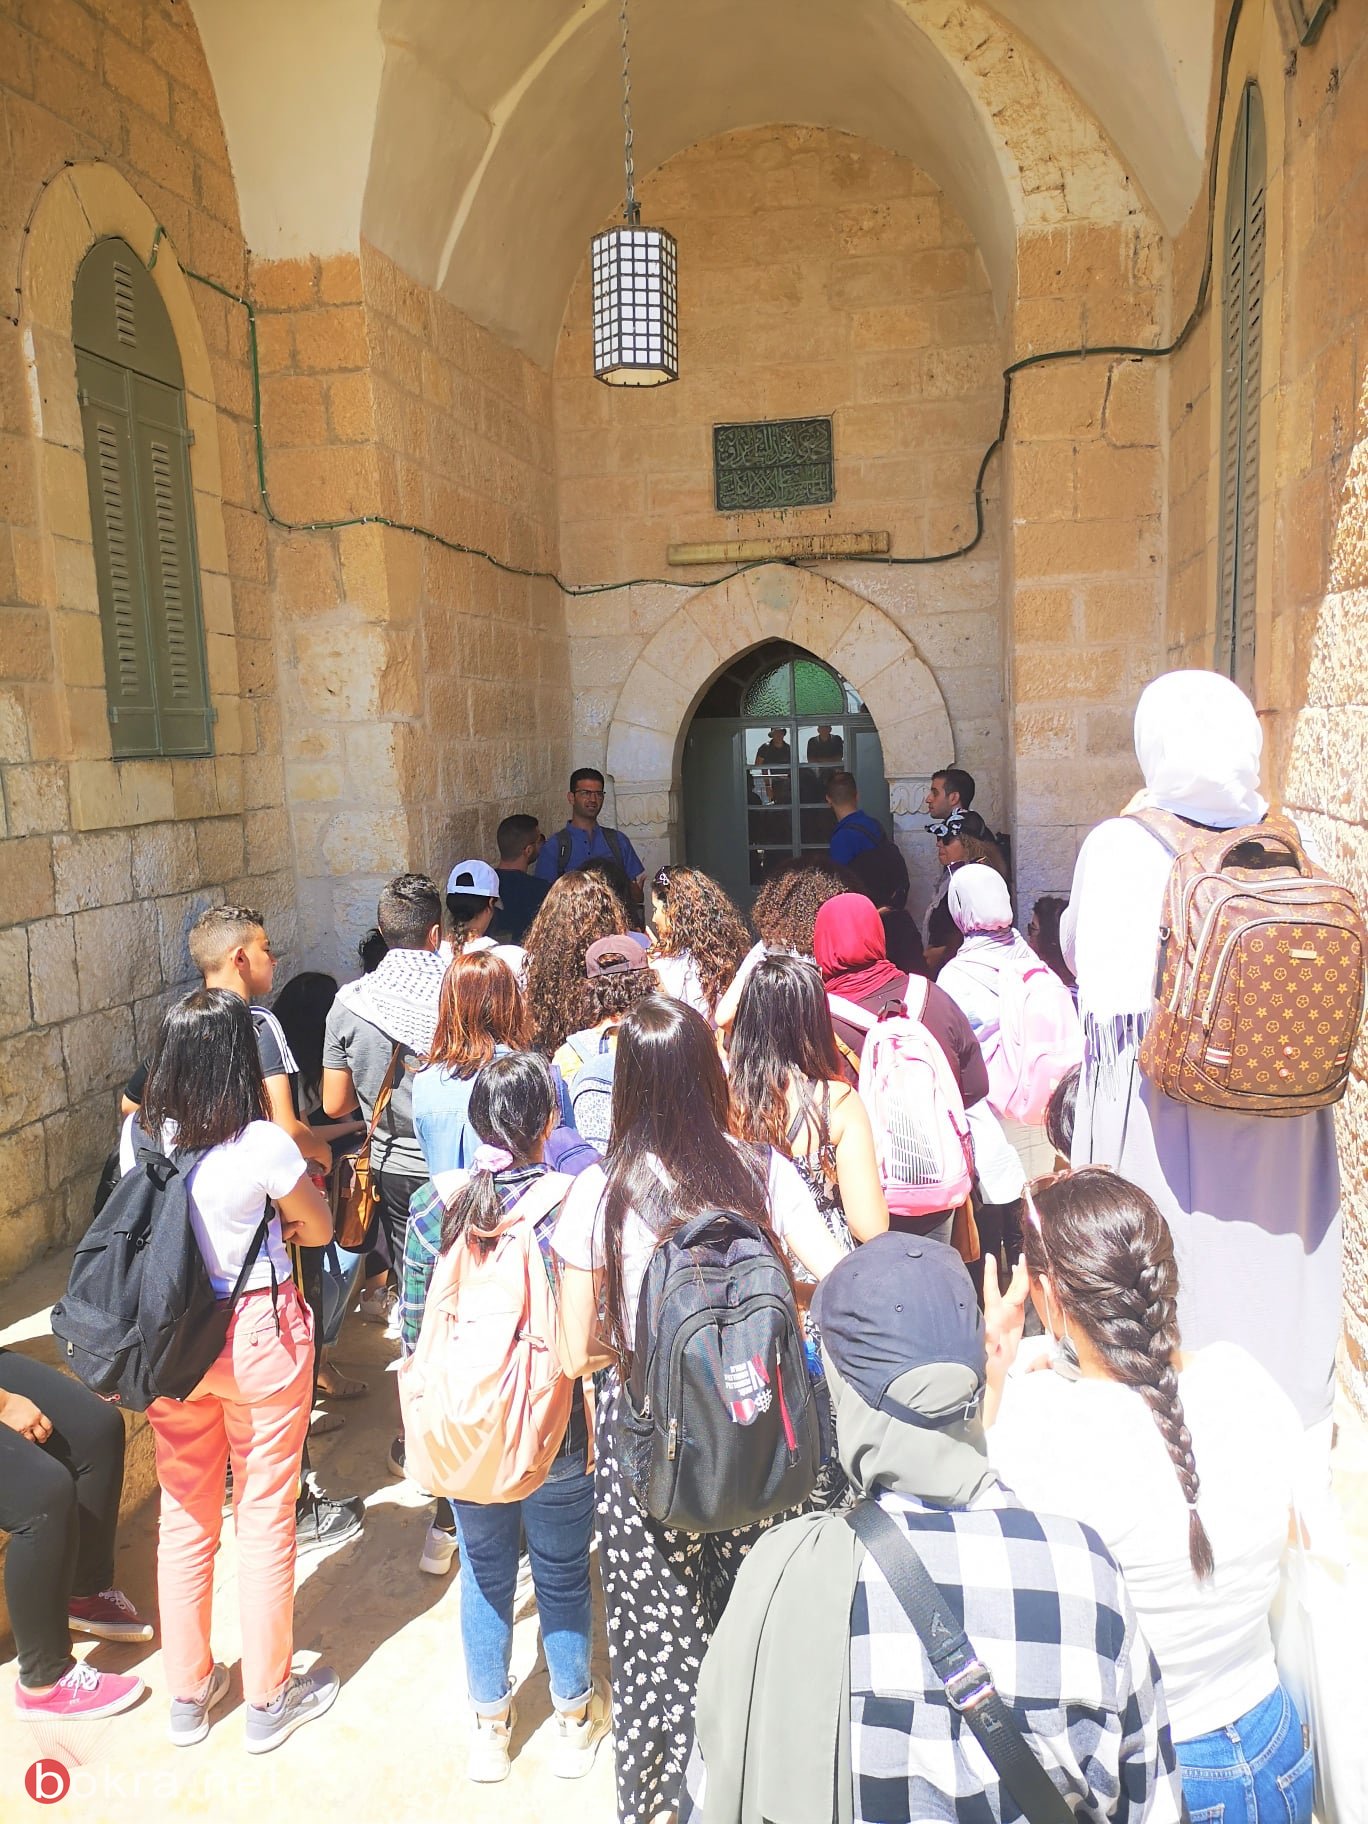 مجموعات مشروع "صناعة المكان" في جولة تعليمية ودراسة للحيّز الفلسطيني في القدس-4